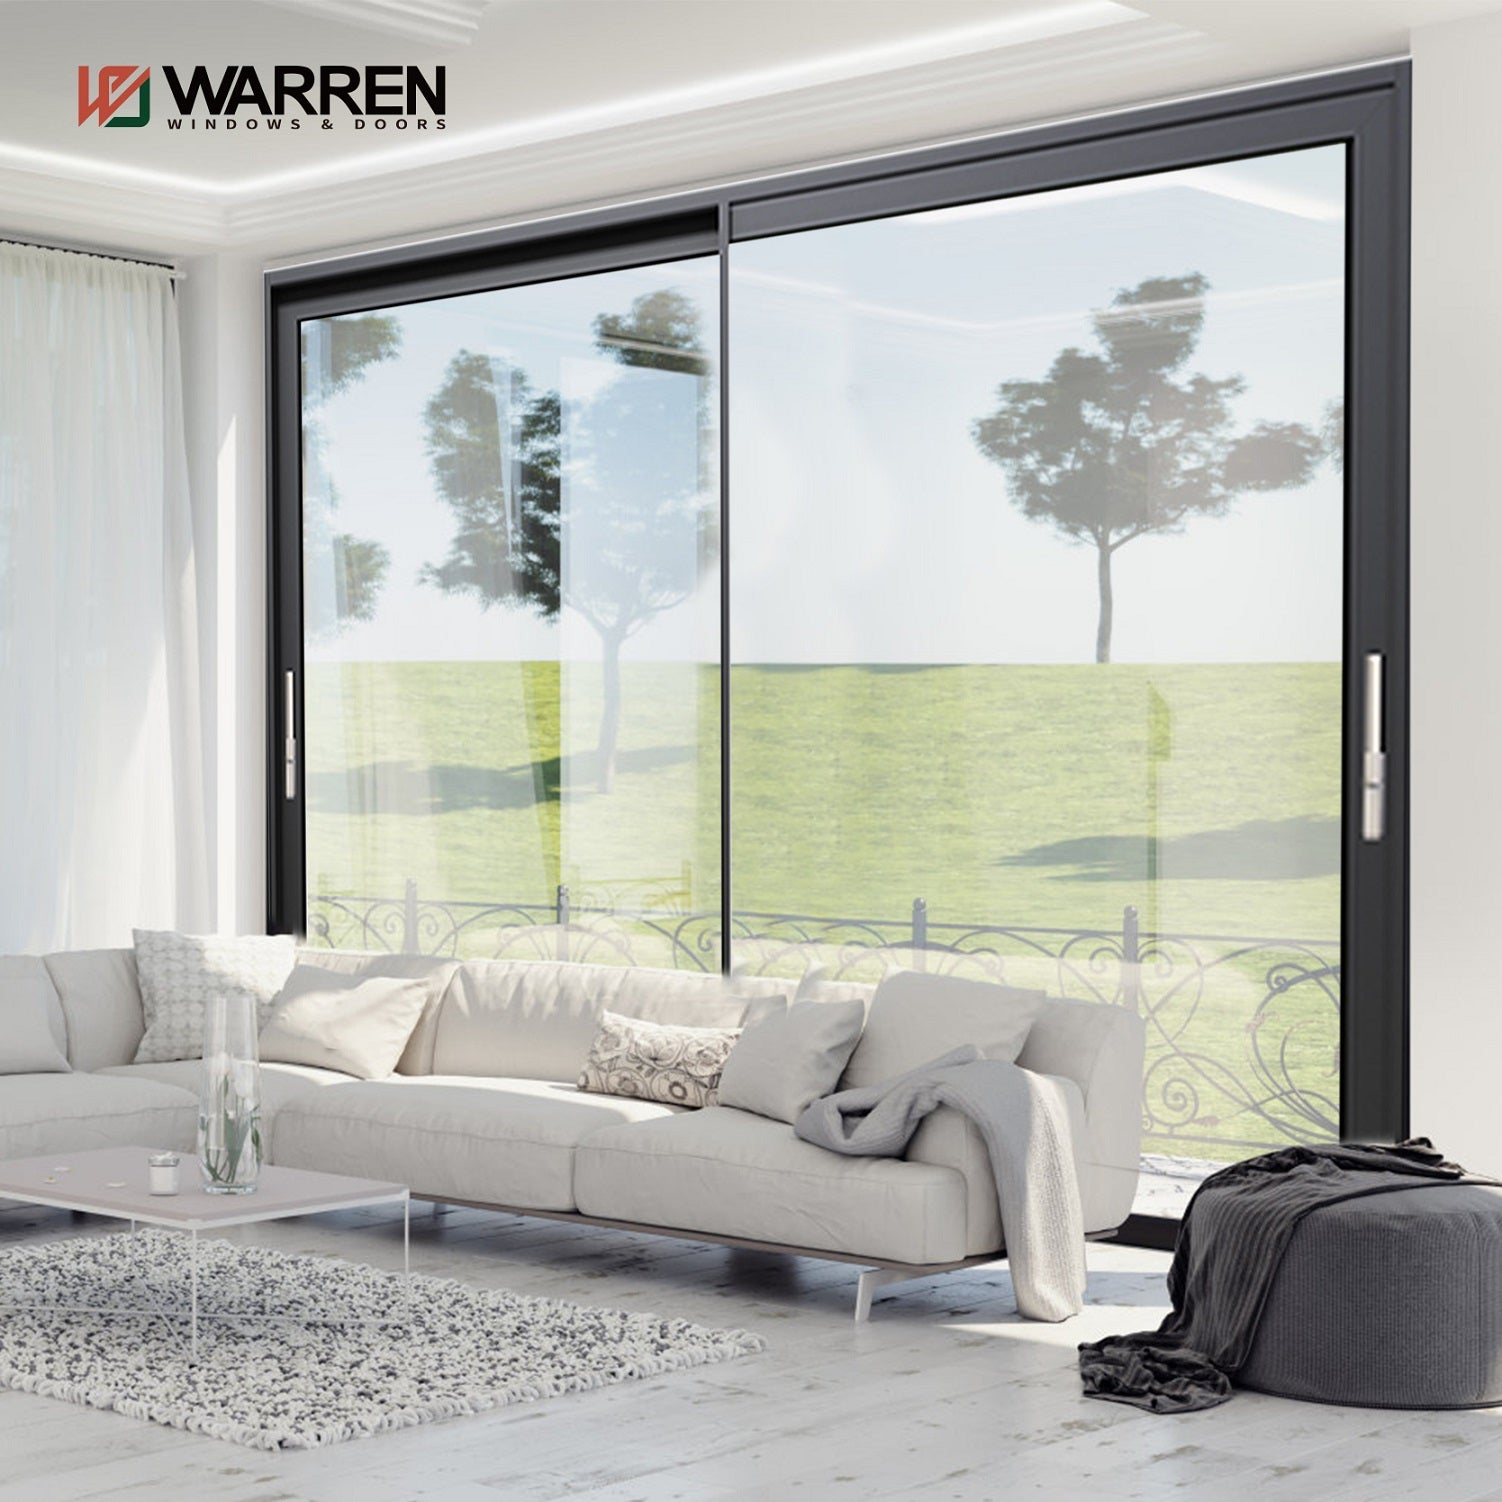 Warren Hot Sale Professional Lower Price Interior Sliding Glass Door Aluminium Lift Lifting Door